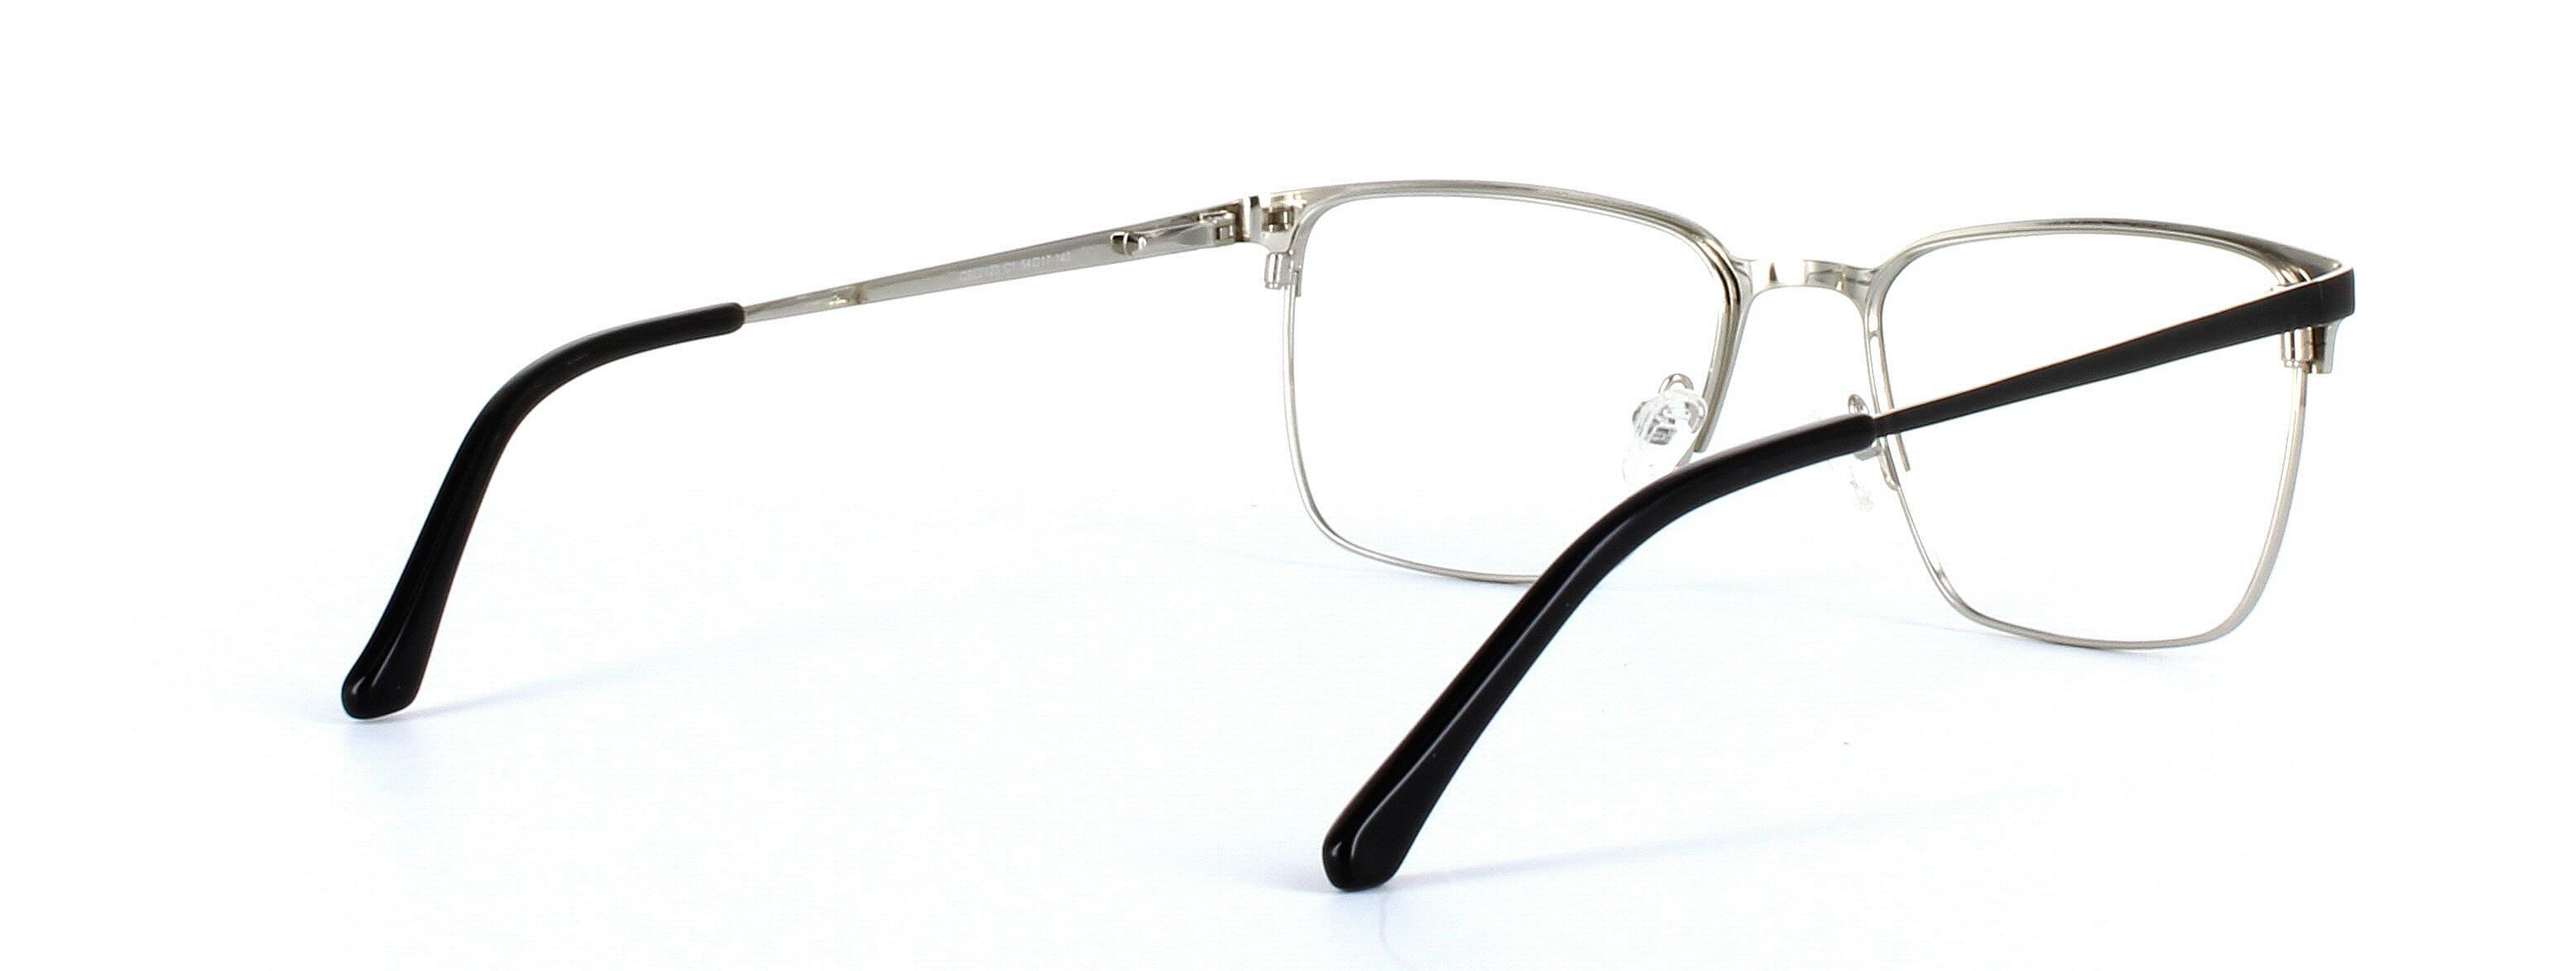 Larkin Matt Black Full Rim Metal Glasses - Image View 4